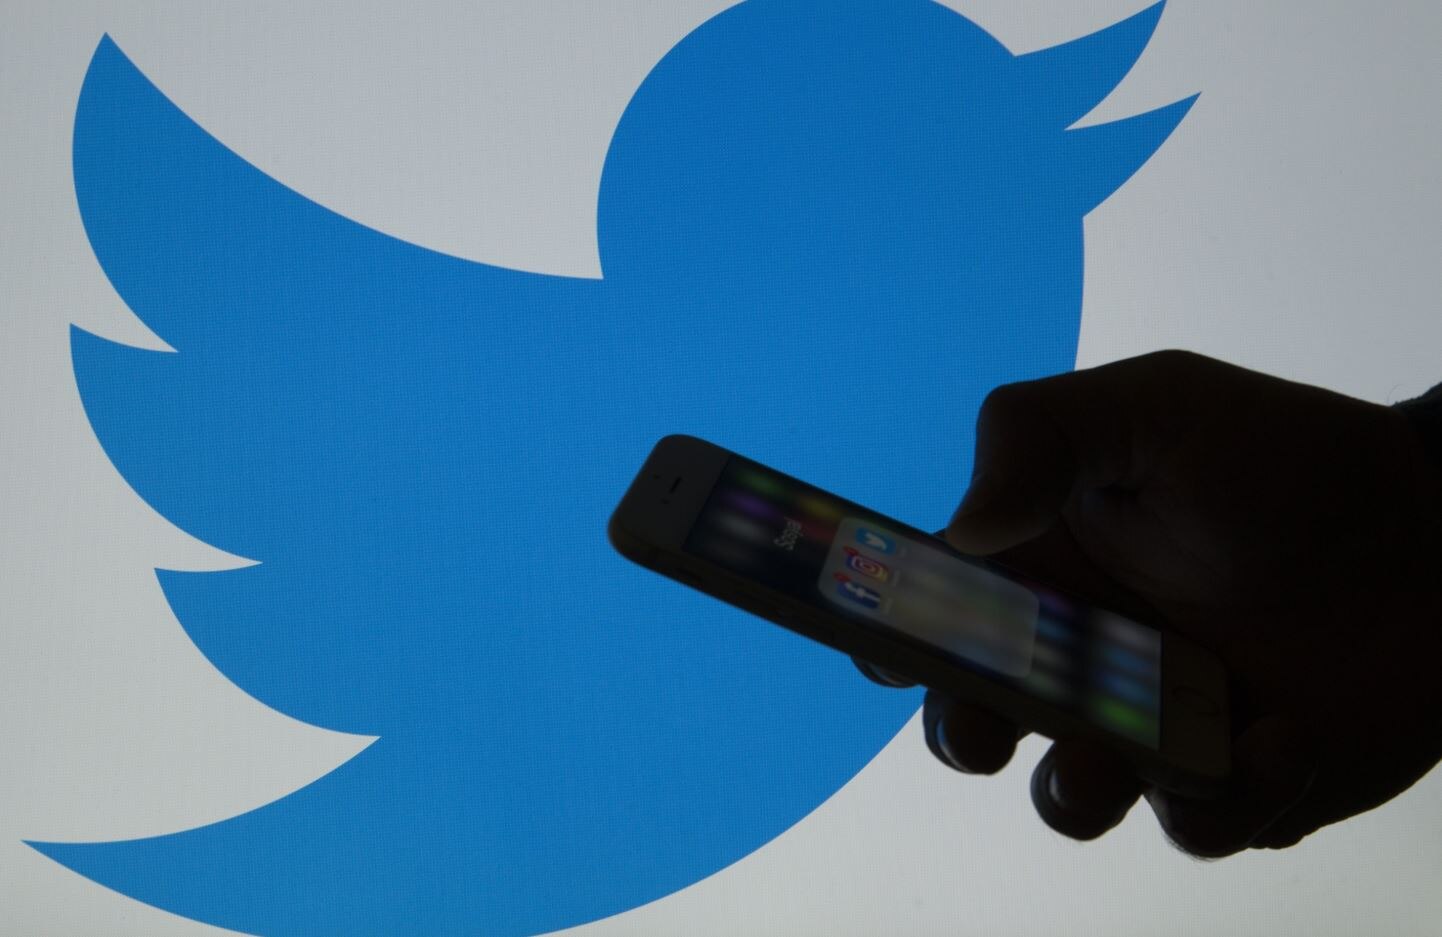 व्हाट्सएप्प के बाद अब भारत सरकार ने ट्विटर से सैकड़ों अकाउंट्स की जानकारी मांगी